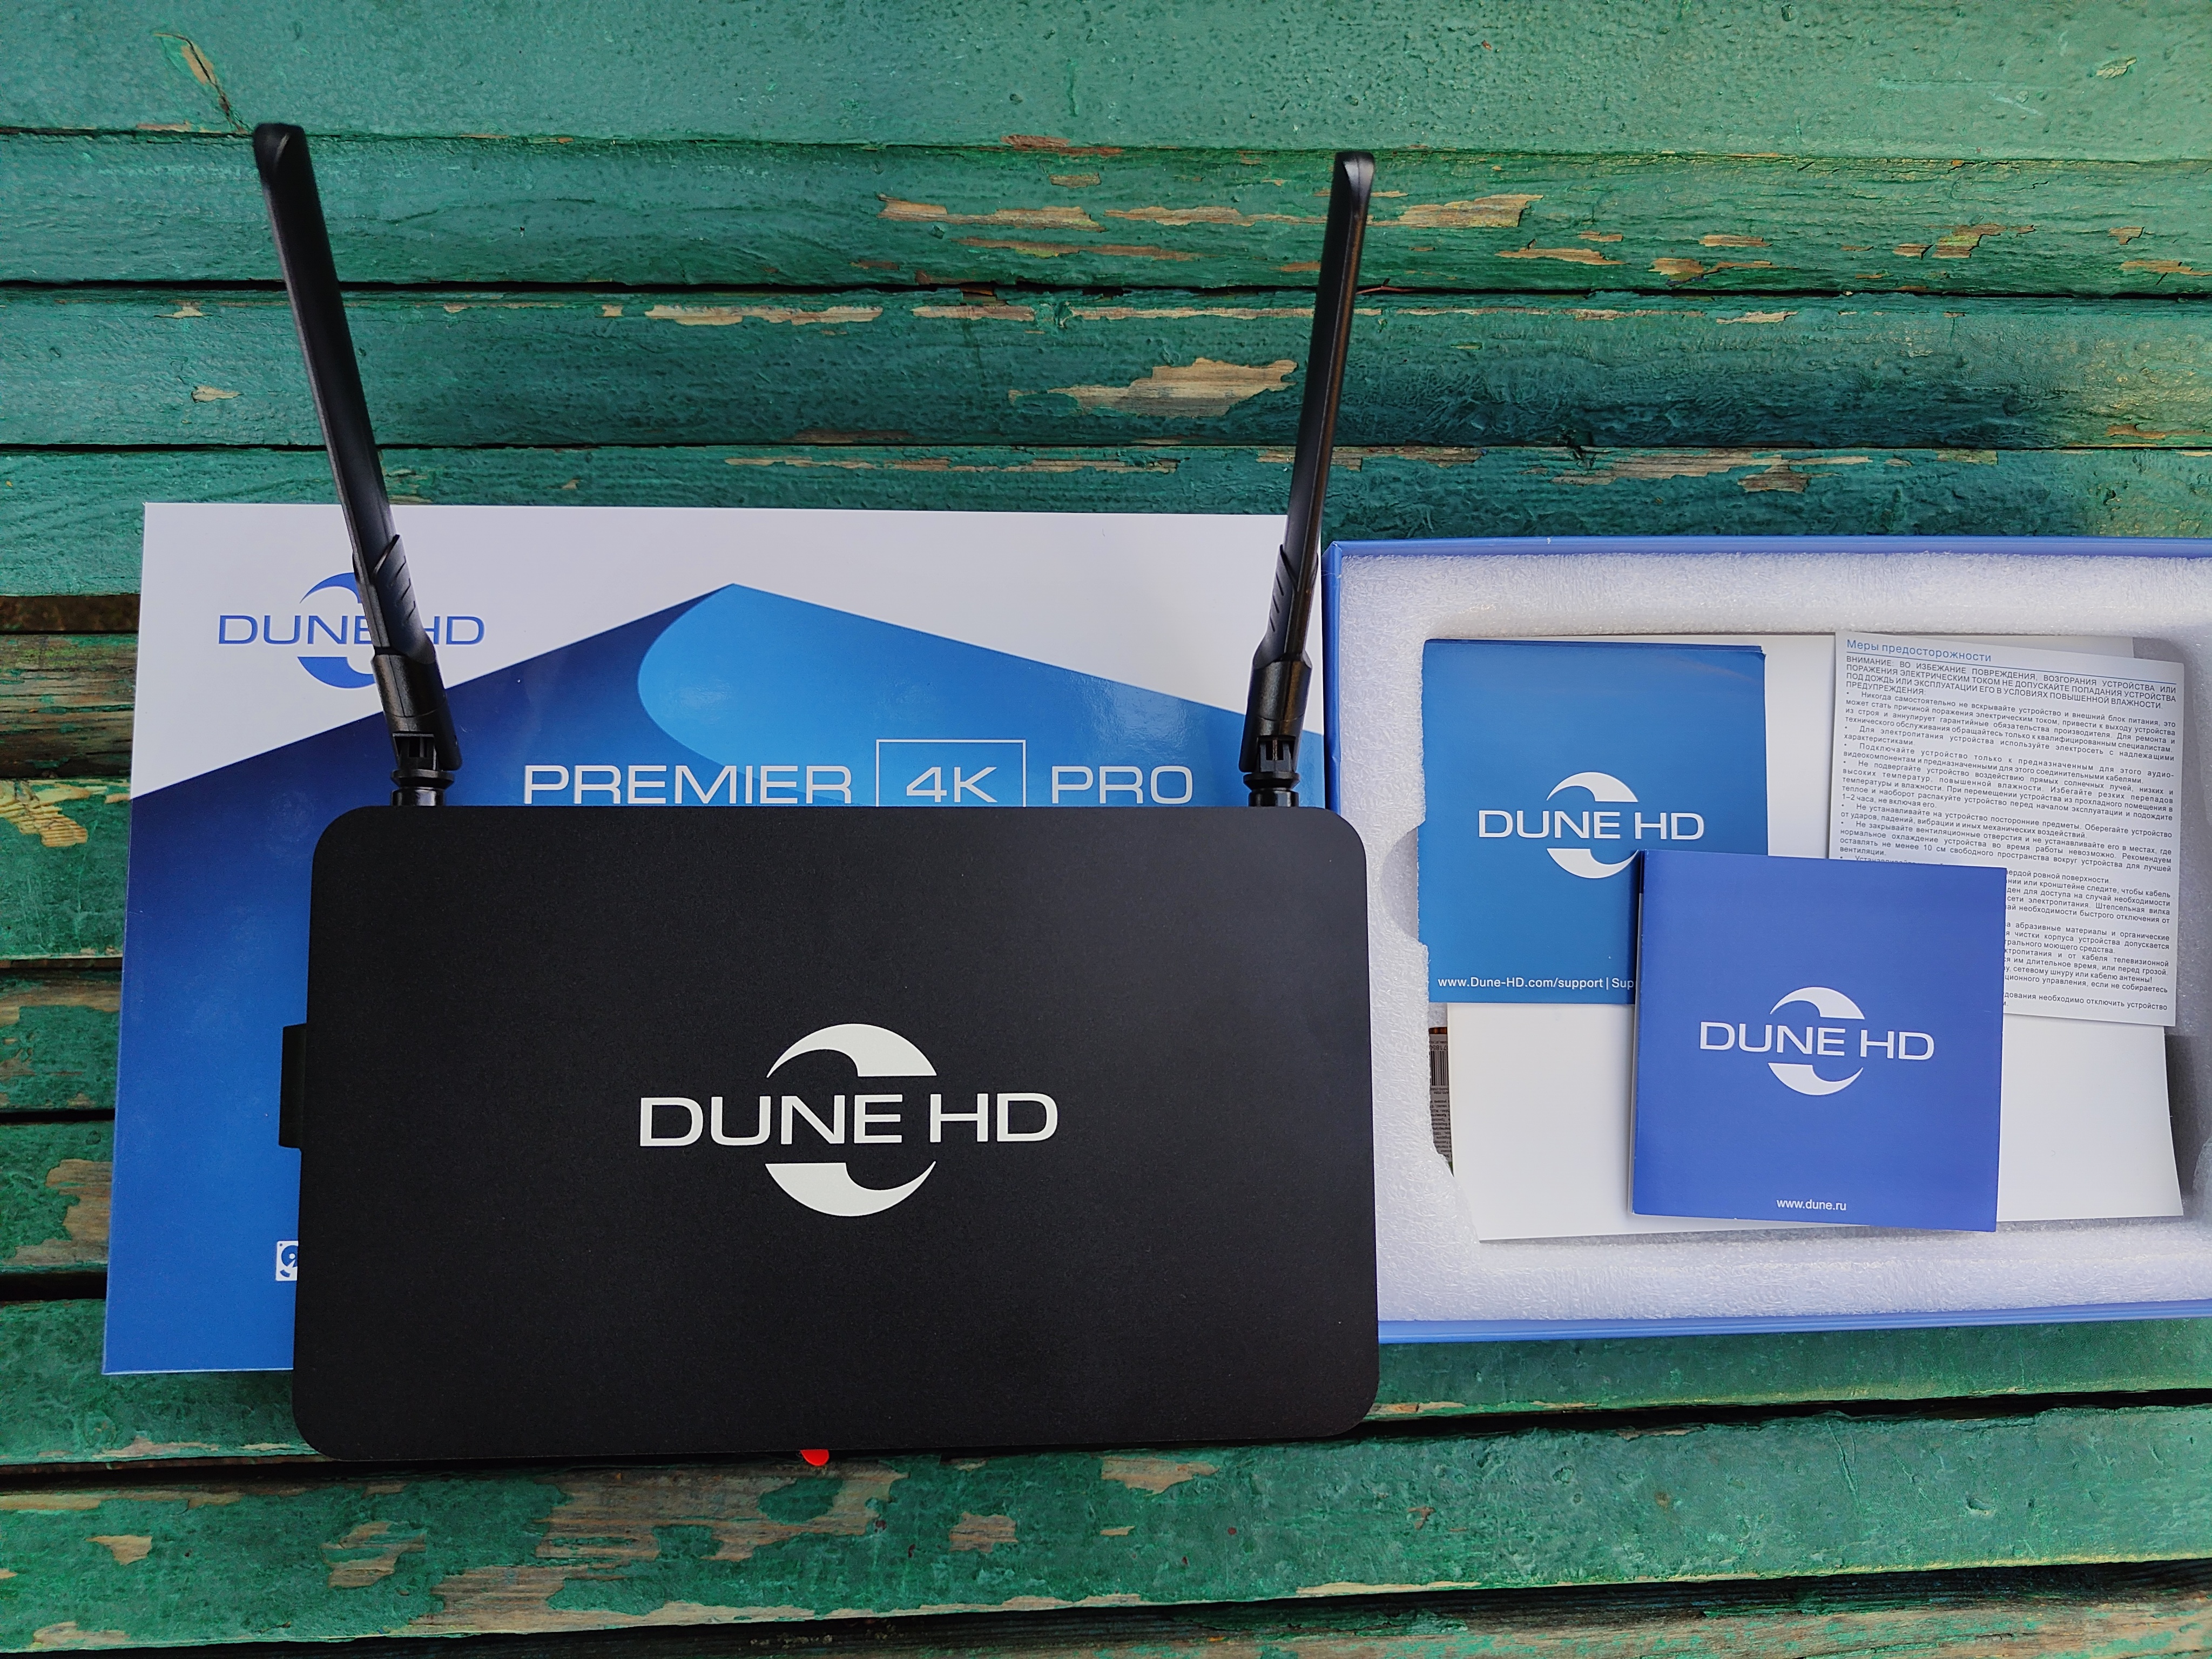 Dune HD Premier 4K Pro – DUNE HD